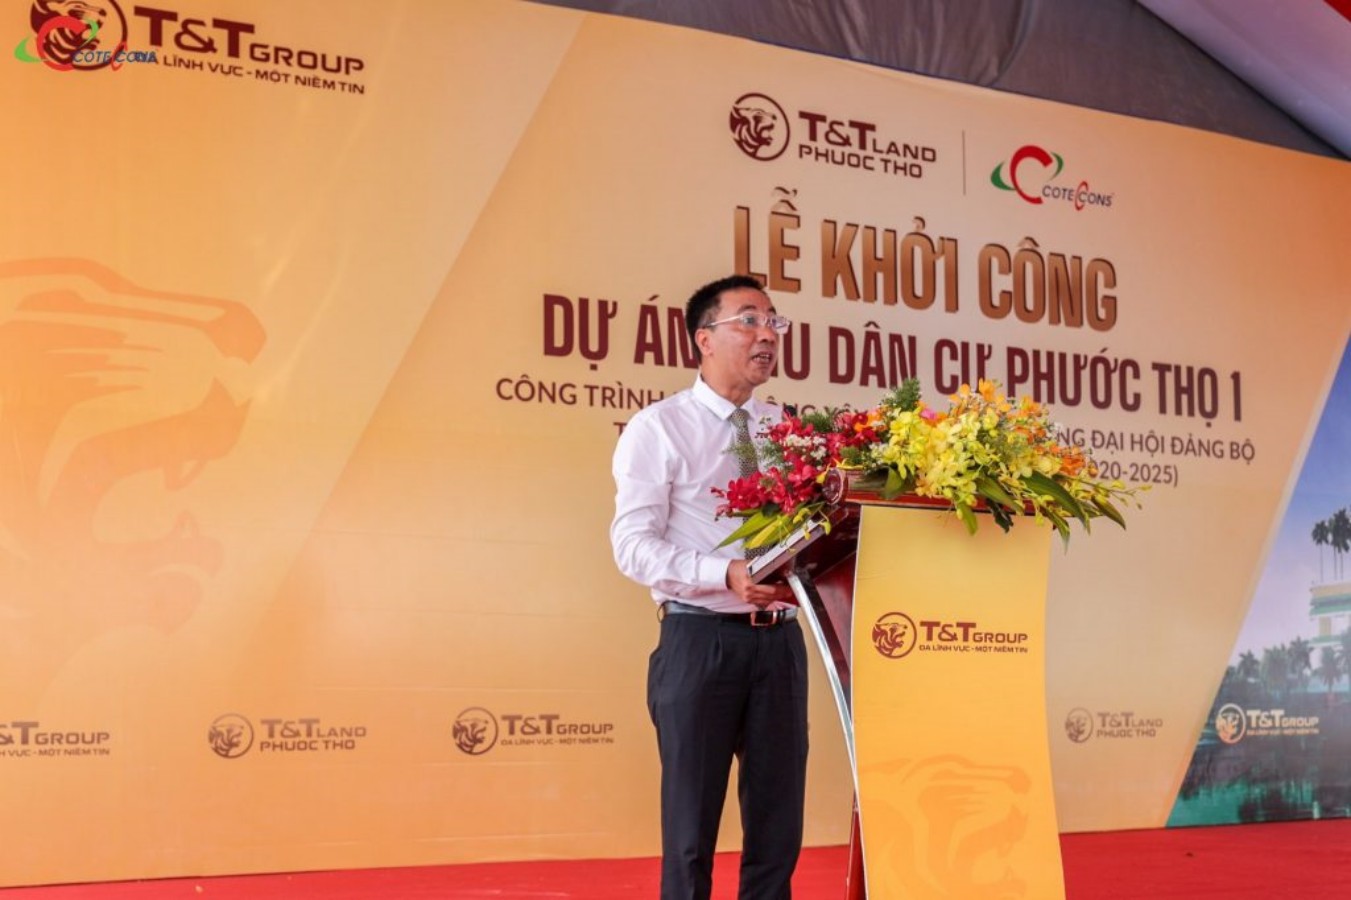 Ông Nguyễn Anh Tuấn, Phó TGĐ Tập đoàn T&T Group phát biểu tại lễ khởi công dự án.